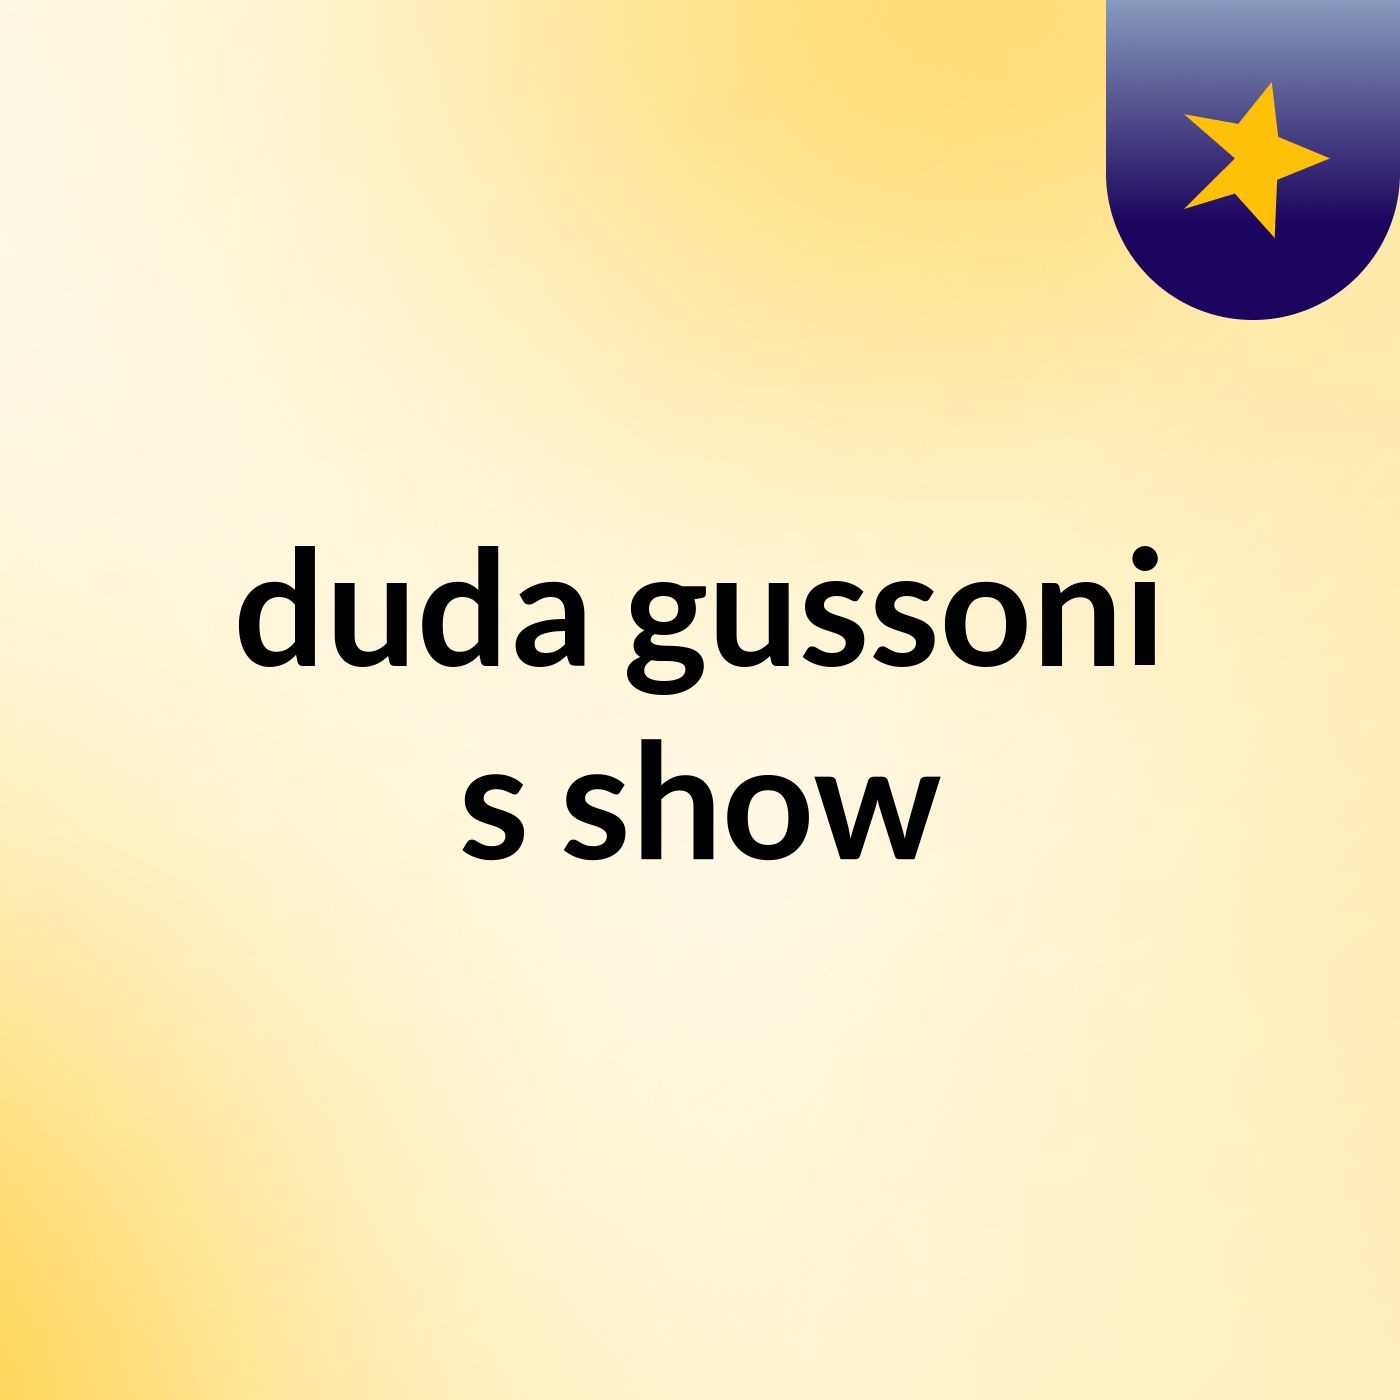 duda gussoni's show